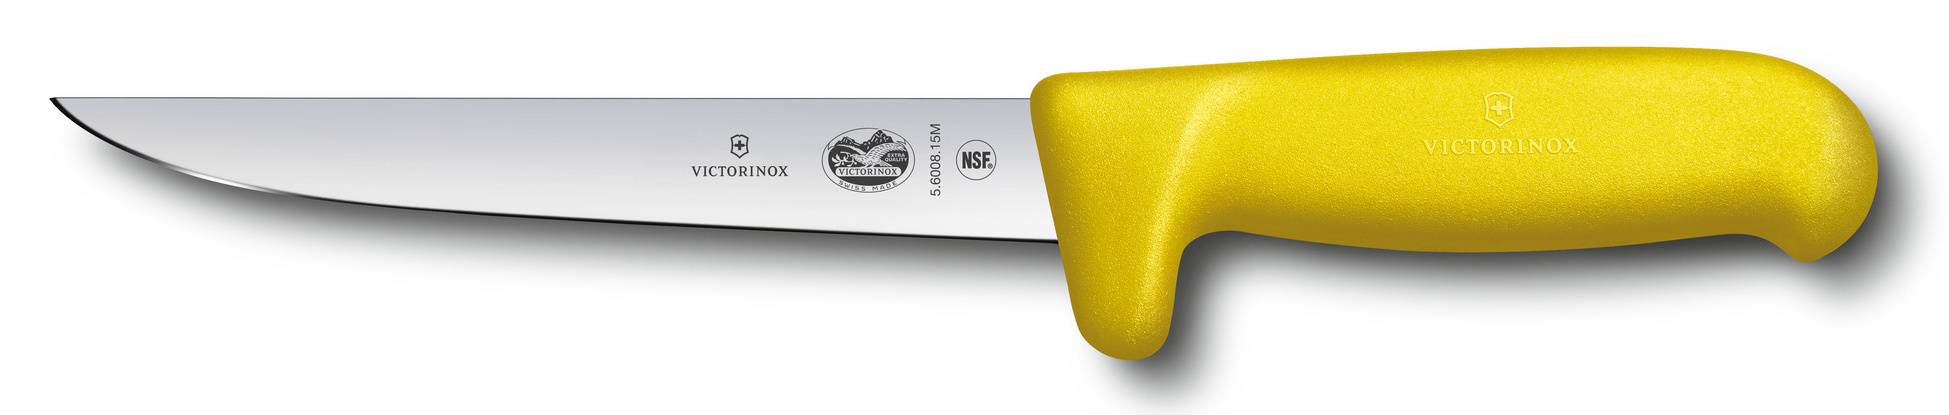 Нож Victorinox Fibrox Safety Grip желтый (5.6008.15m)